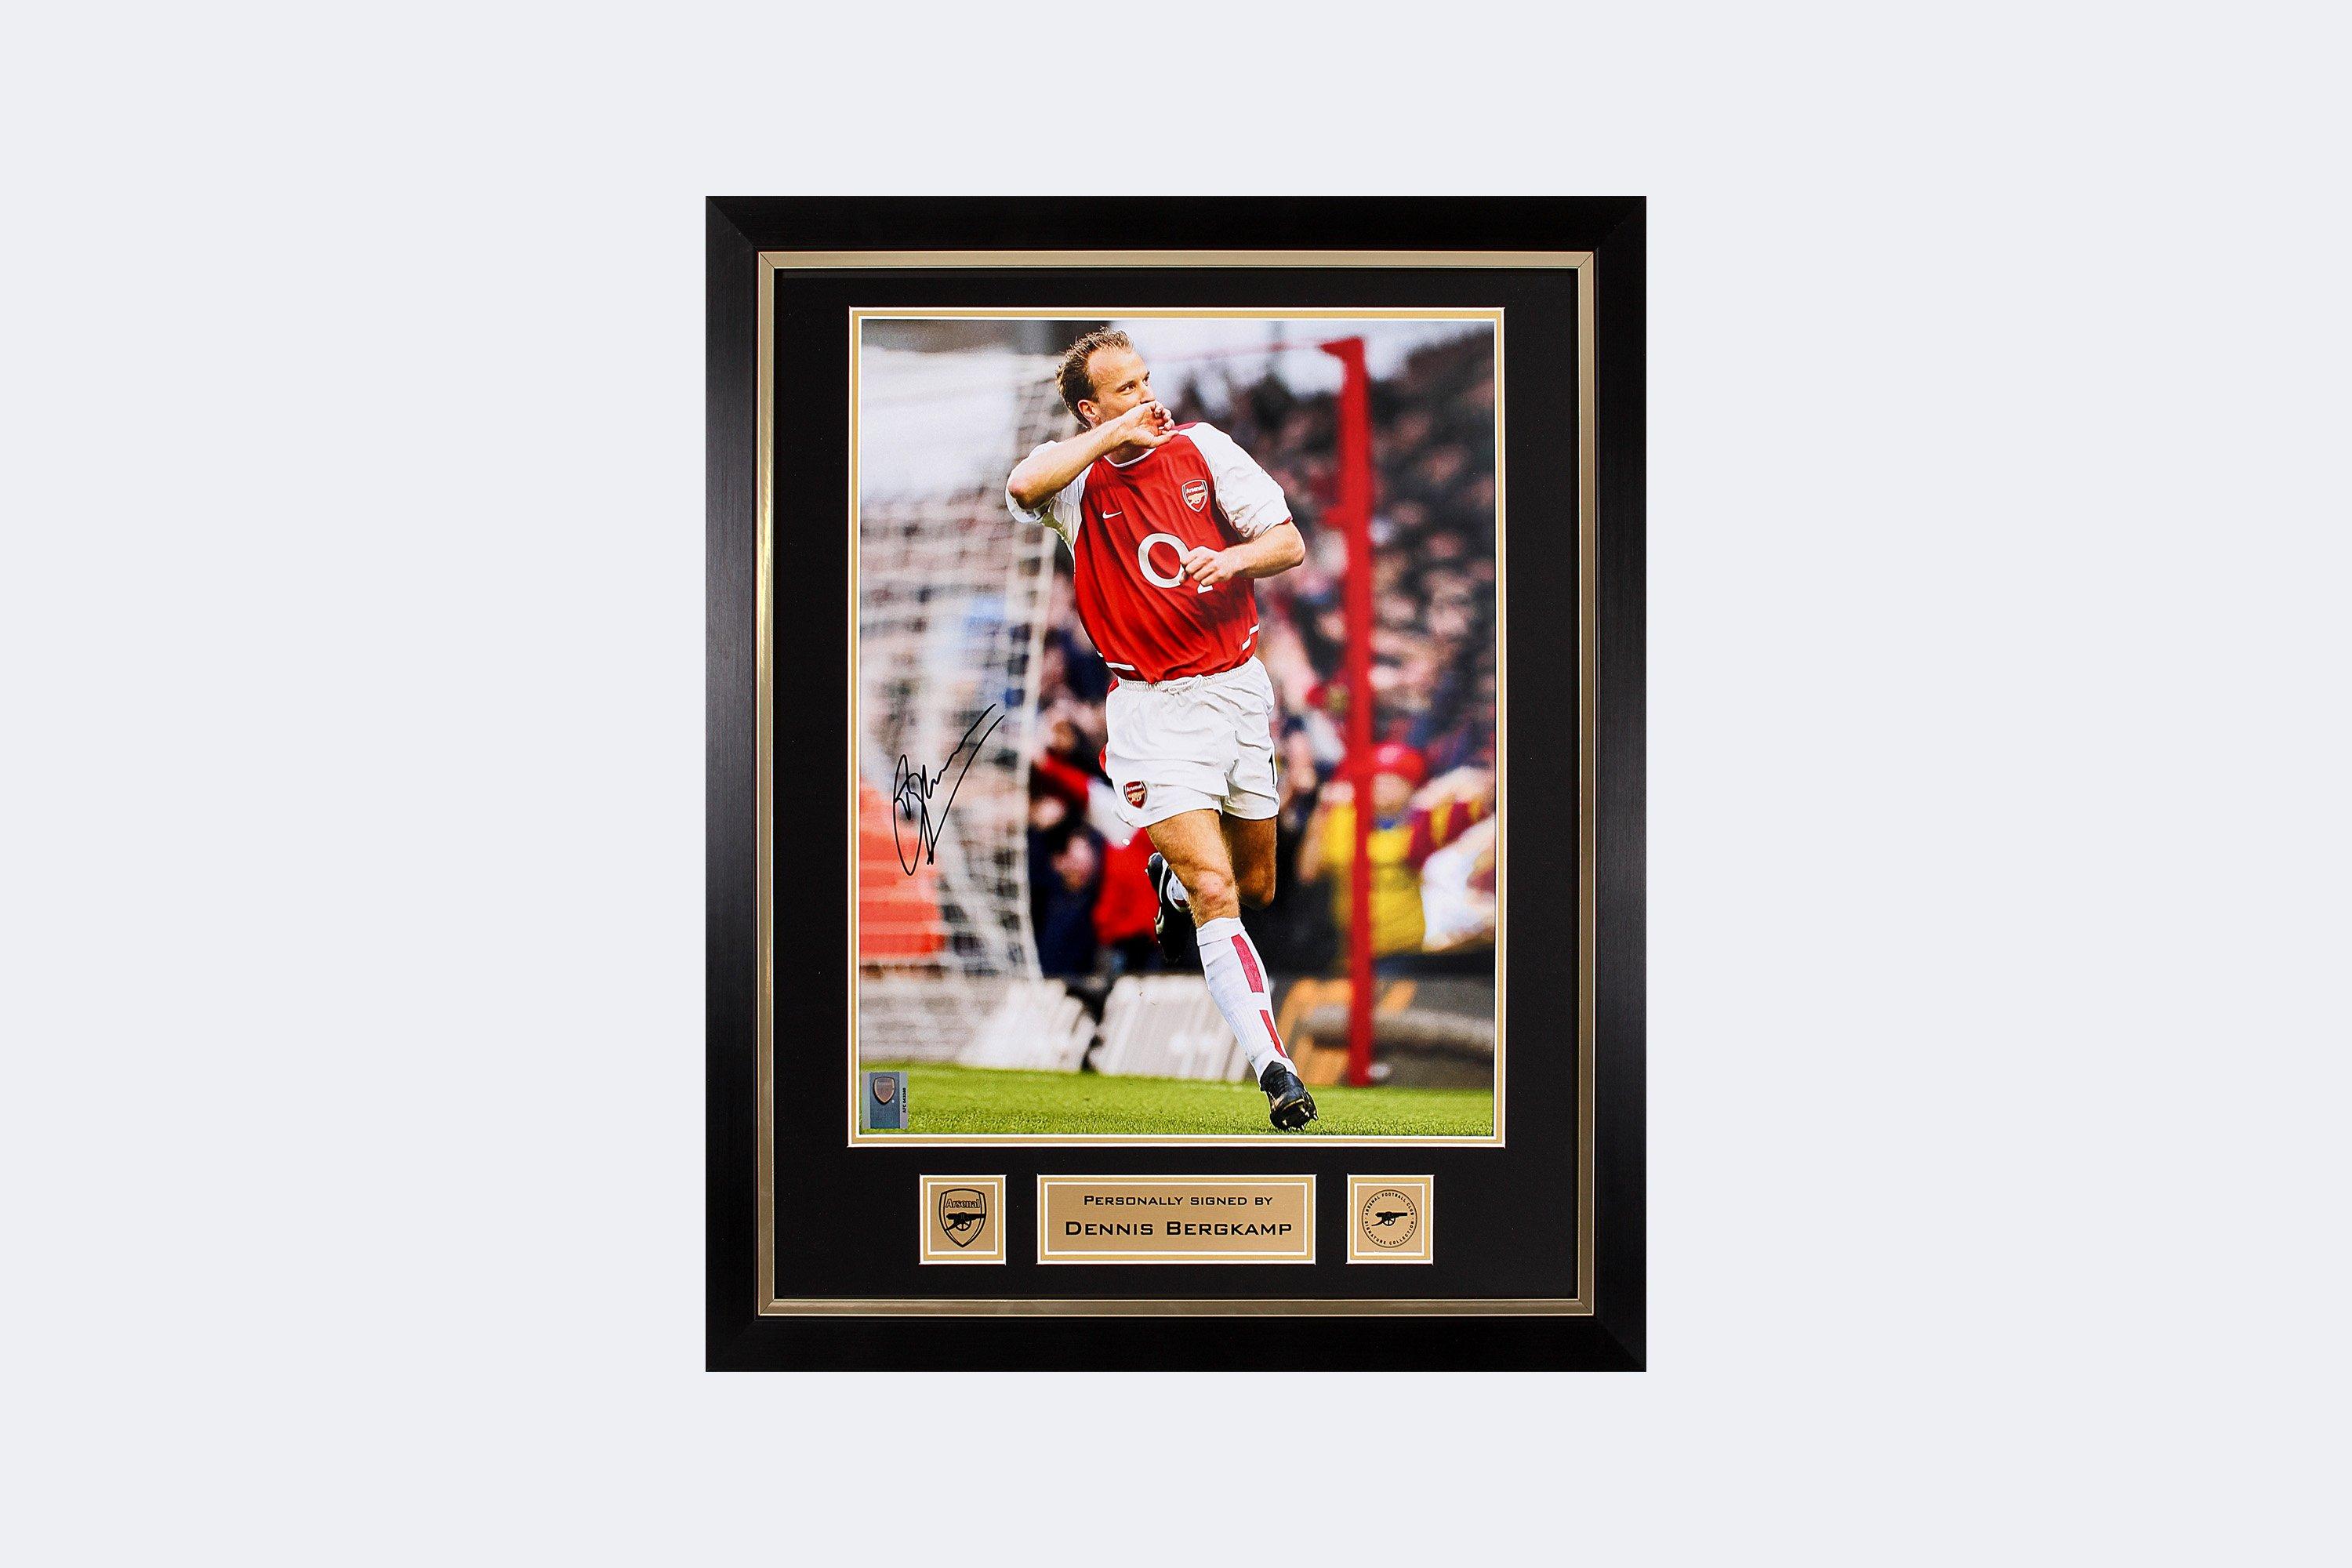 Dennis Bergkamp ha autografato la maglia da calcio dell'Arsenal Heritage  Invincibles. Cornice Deluxe